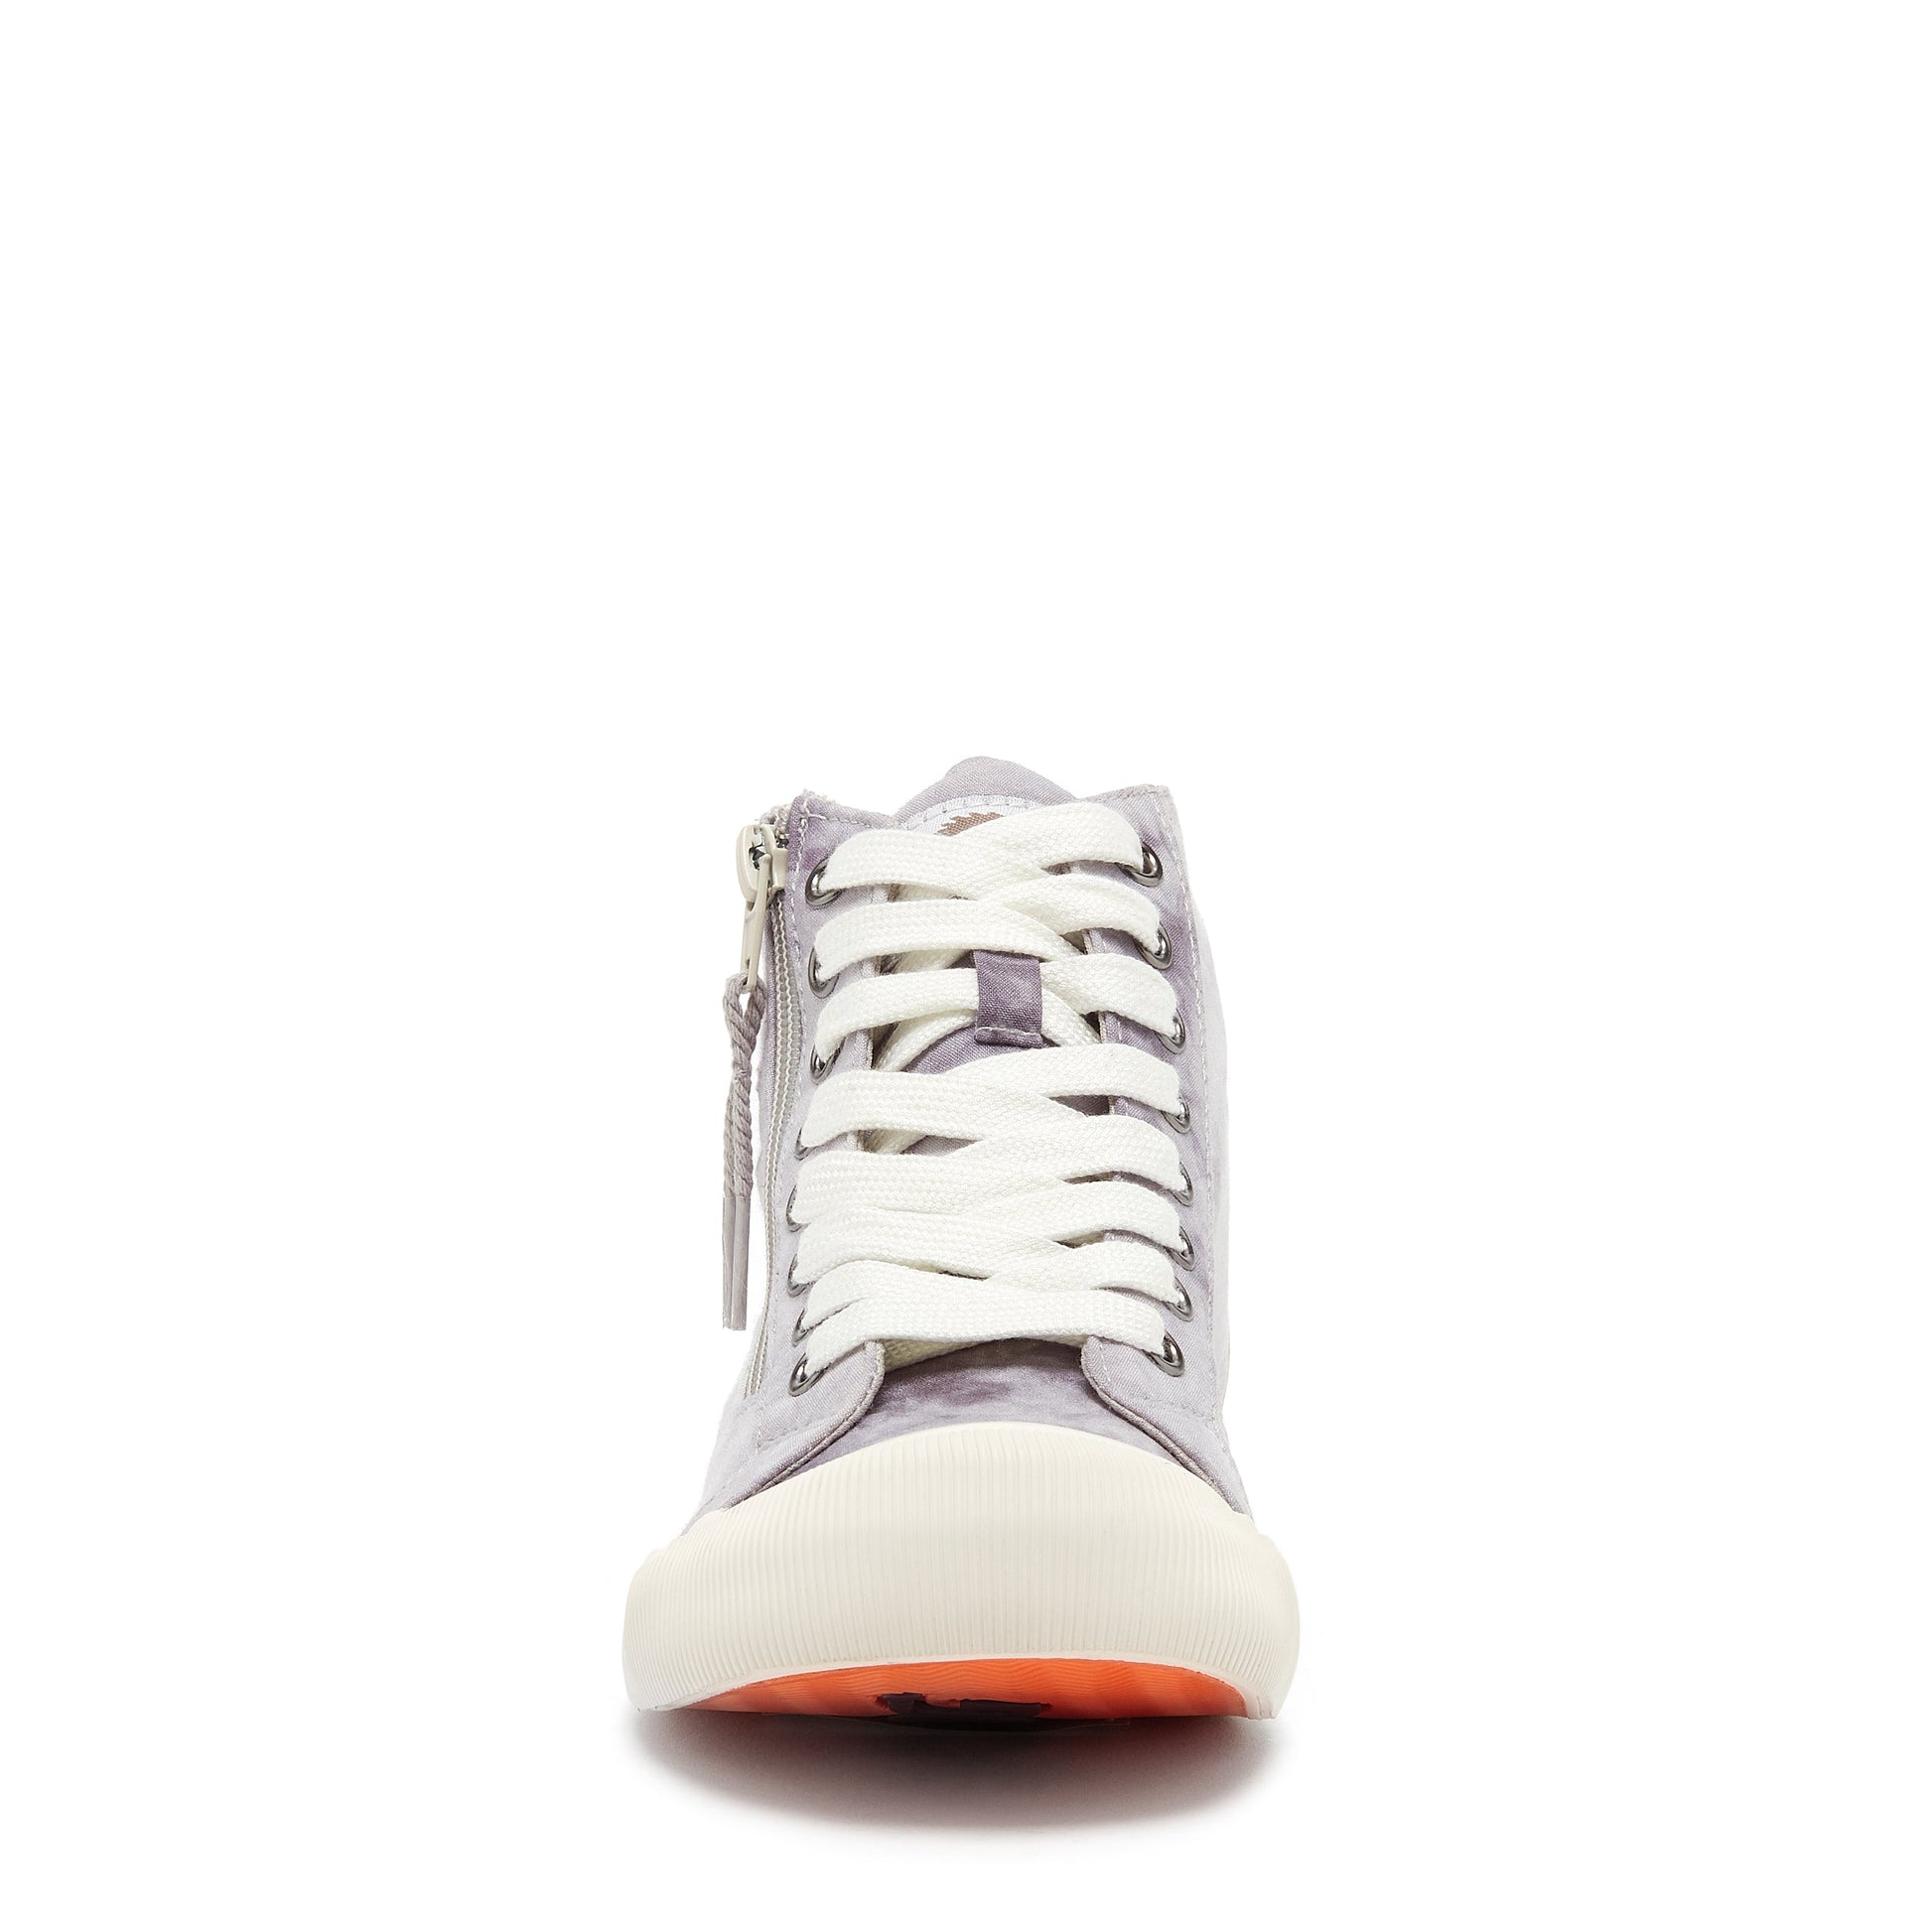 Louis Vuitton Sneaker Damen Gr. 39 Weis/Gold